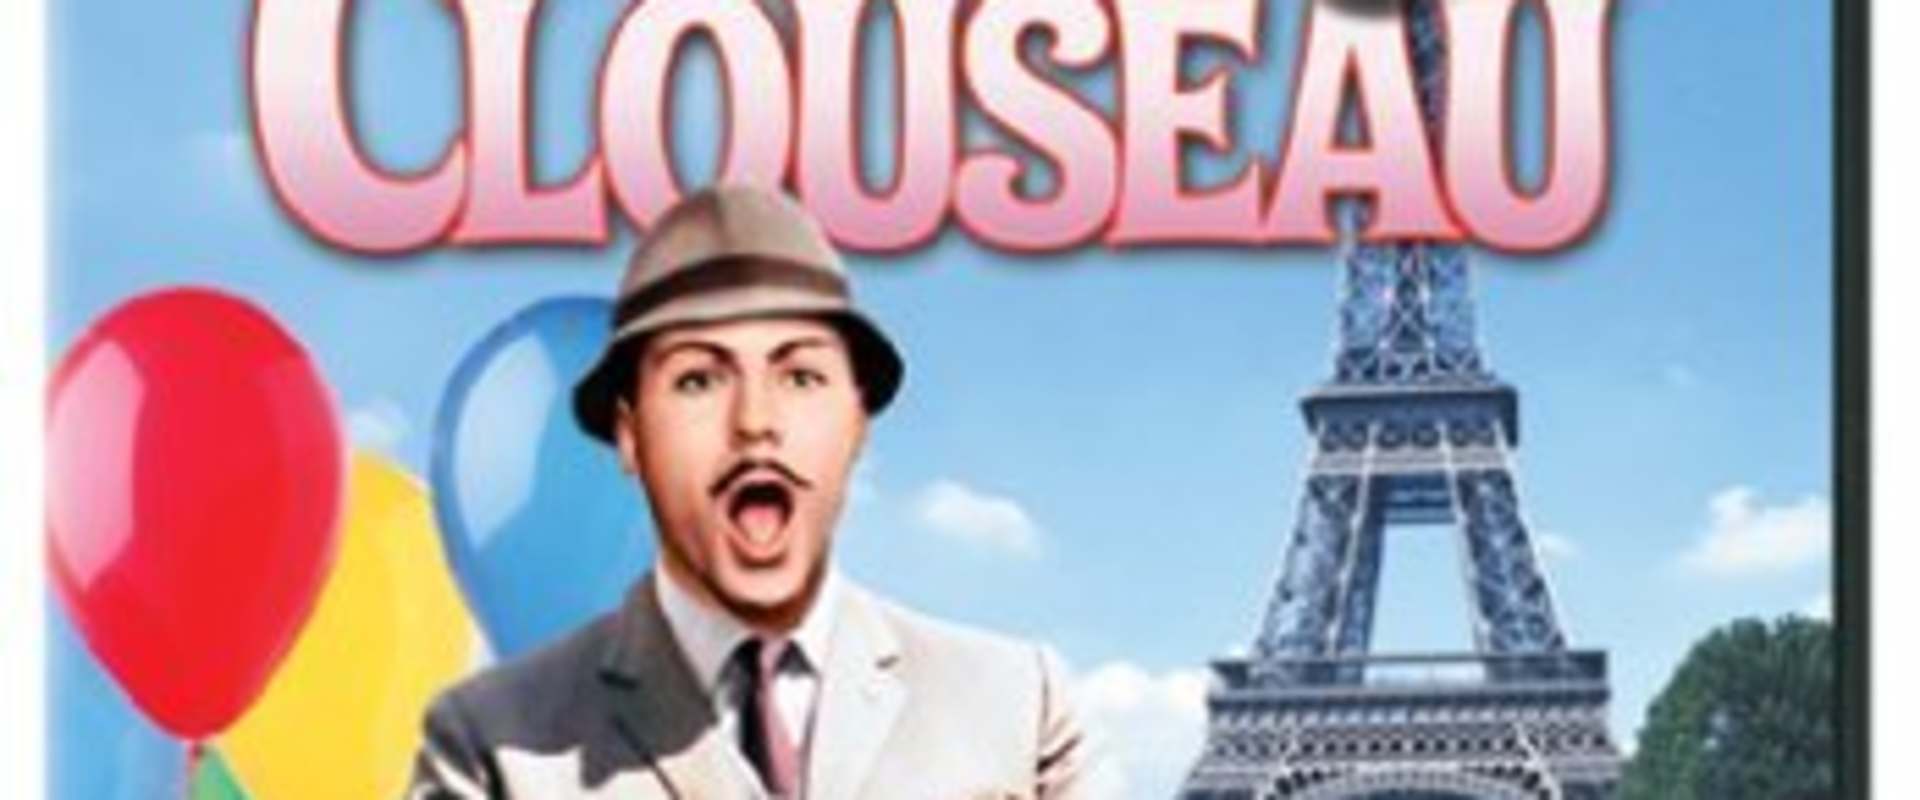 Inspector Clouseau background 1